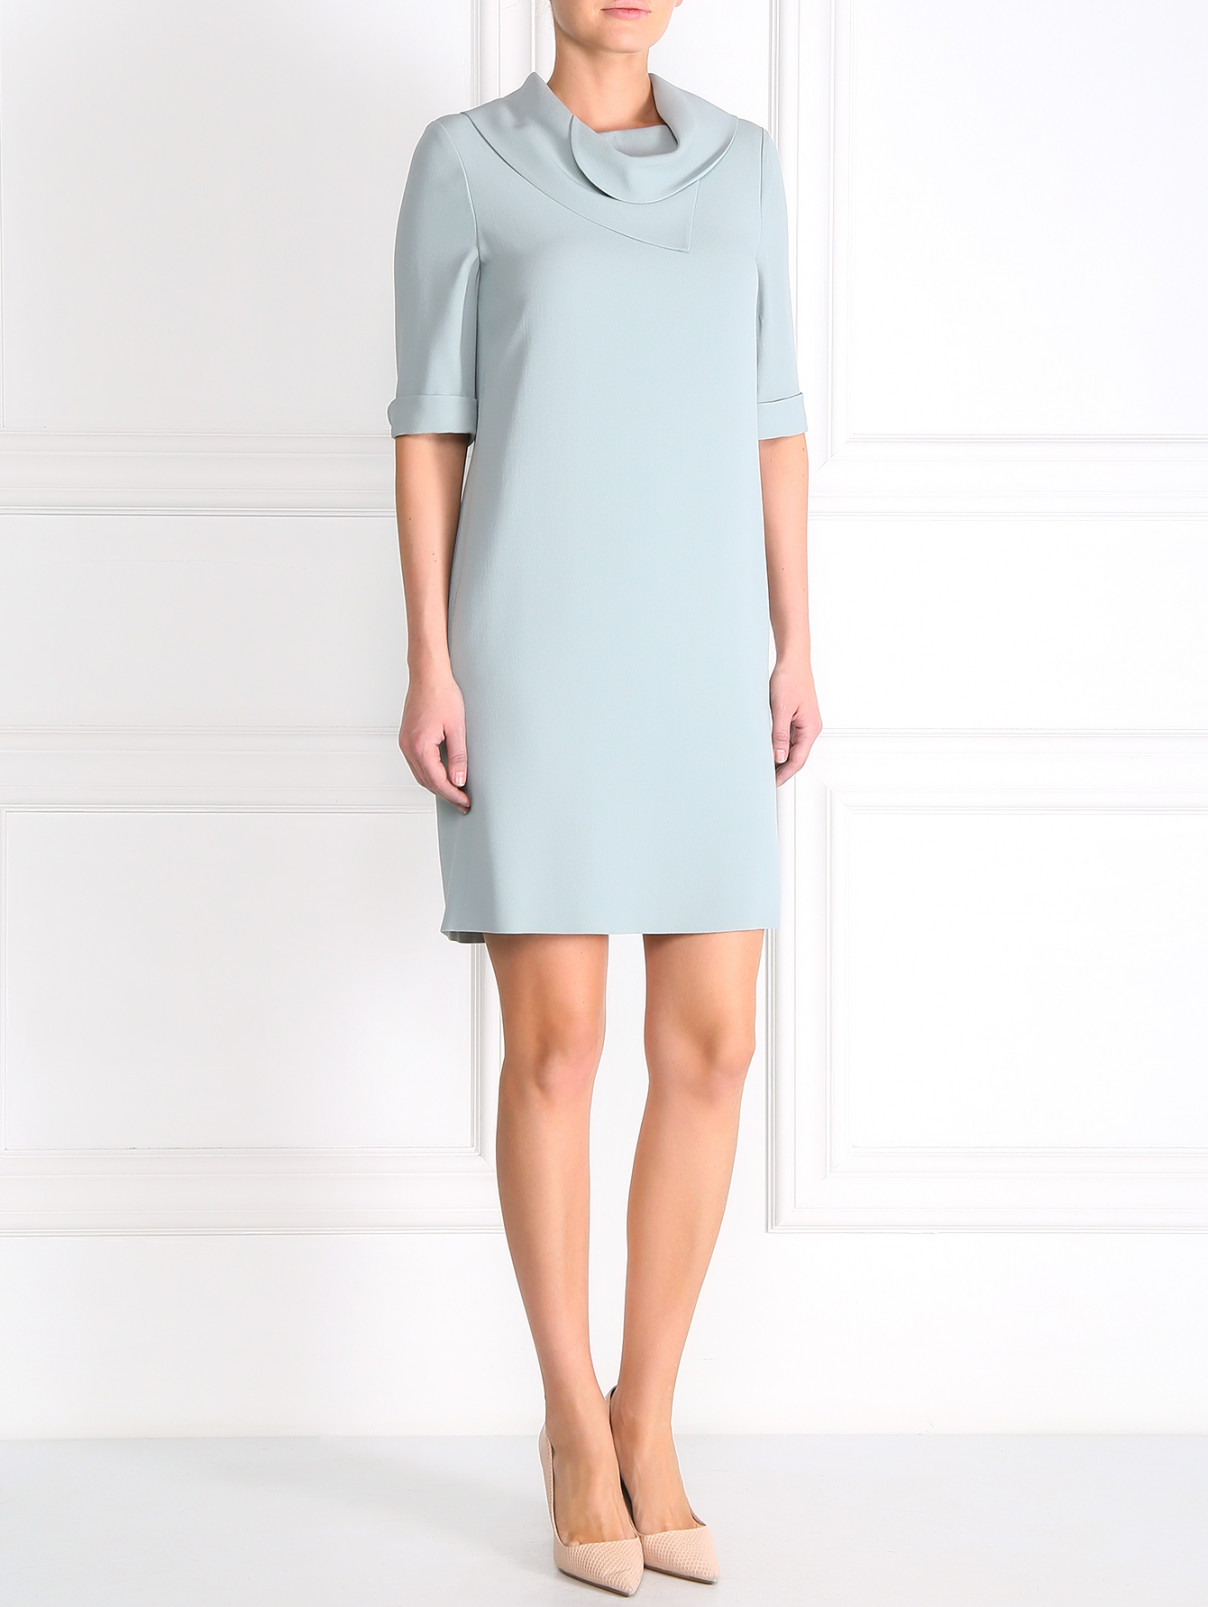 Платье прямого кроя с воротником Emporio Armani  –  Модель Общий вид  – Цвет:  Синий